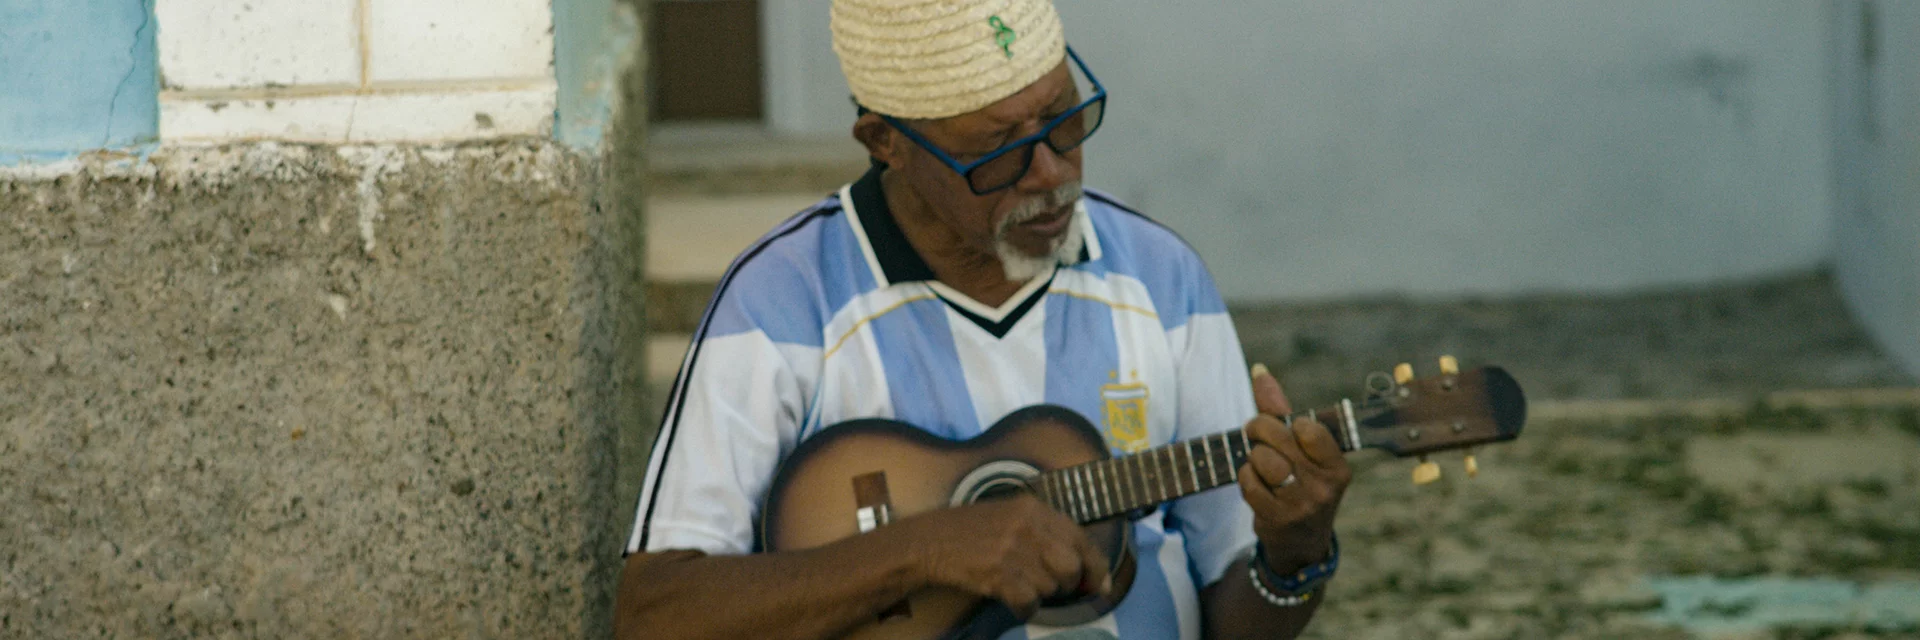 Cavoquinho Player Cape Verde